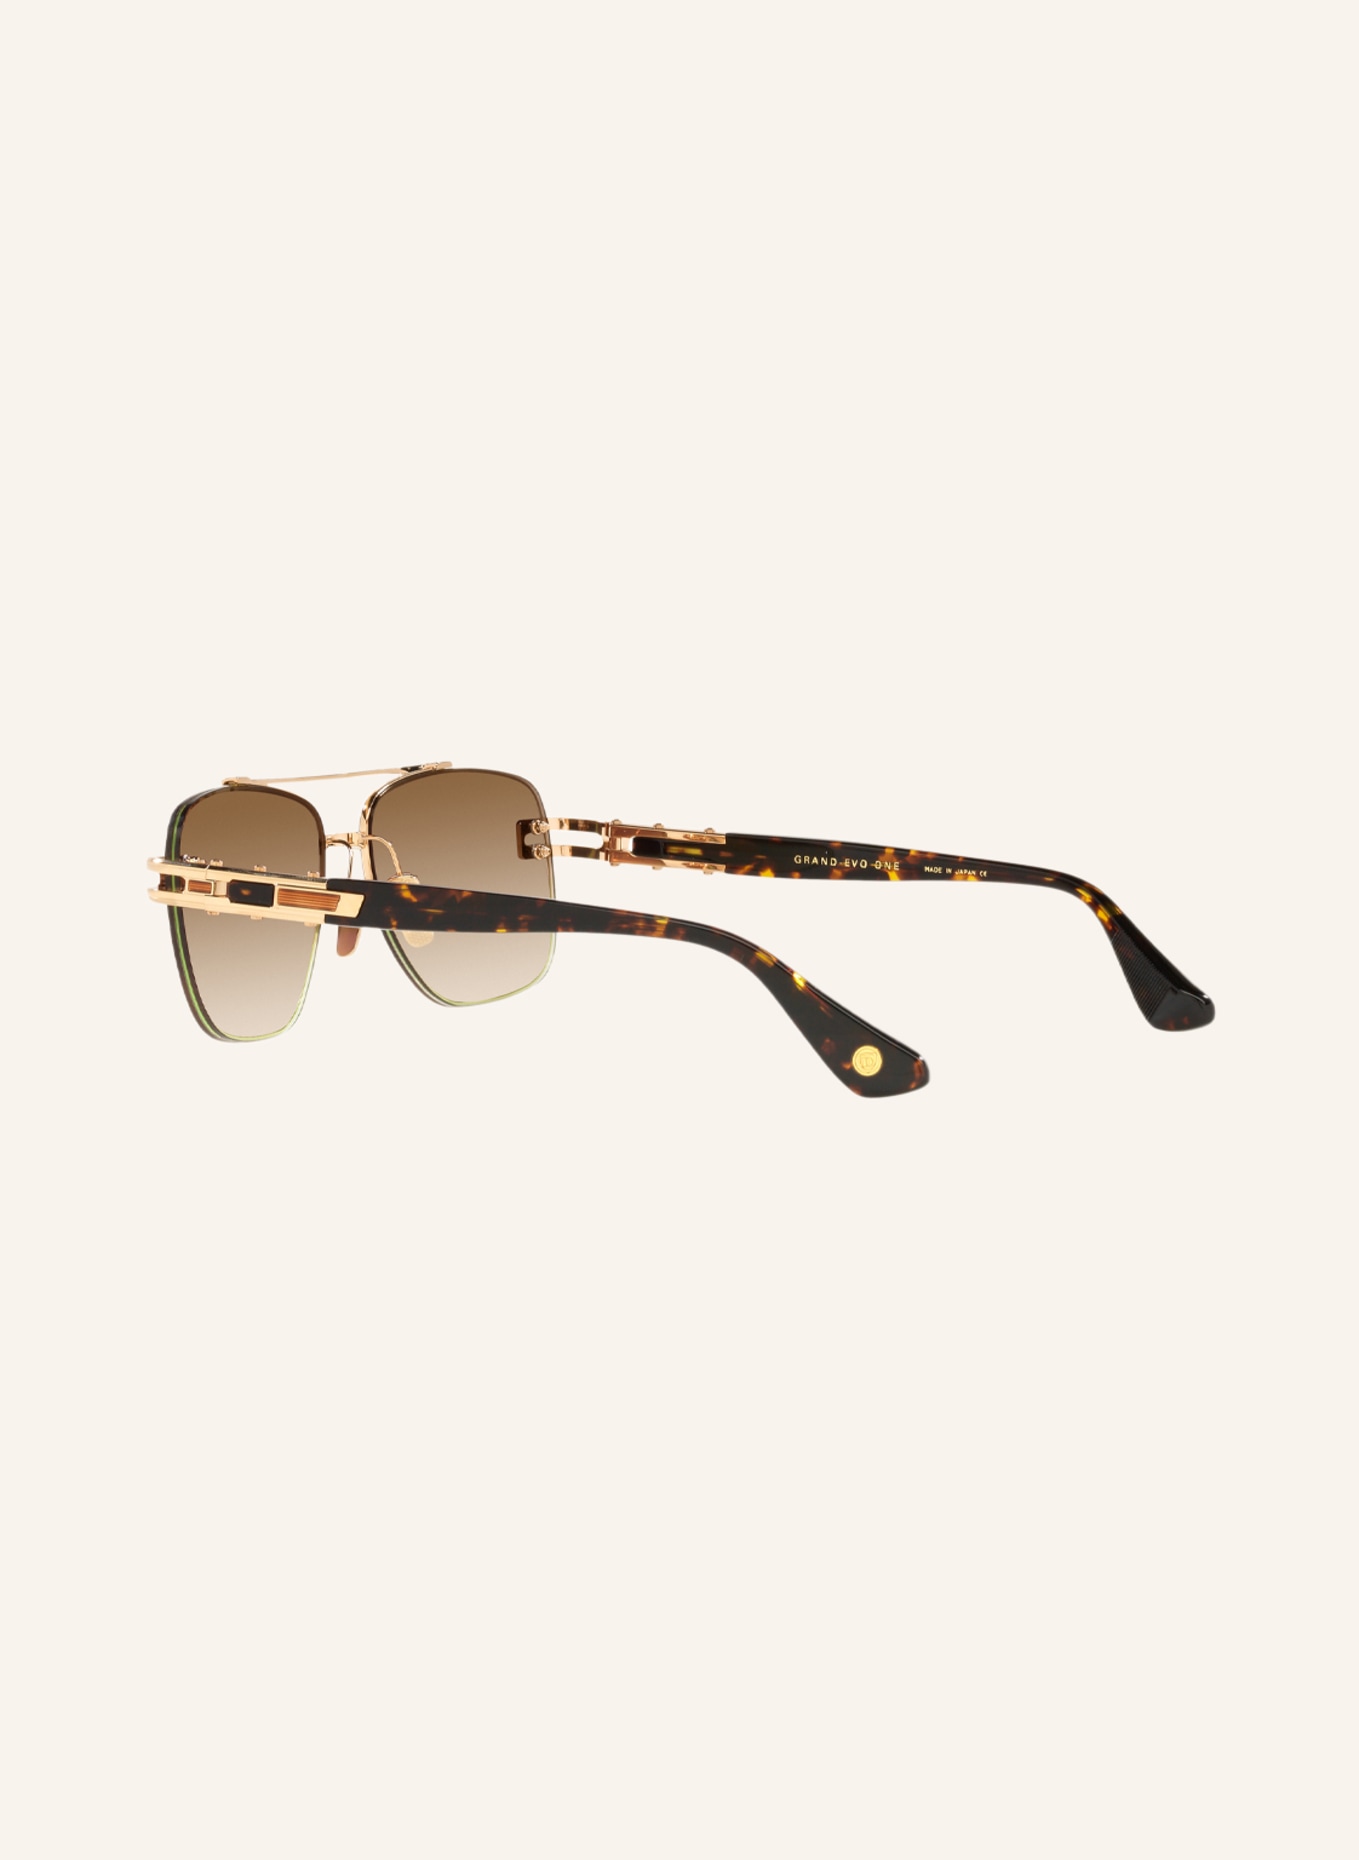 DITA Sunglasses DT8138, Color: 4850D4 - GOLD/ BROWN GRADIENT (Image 4)